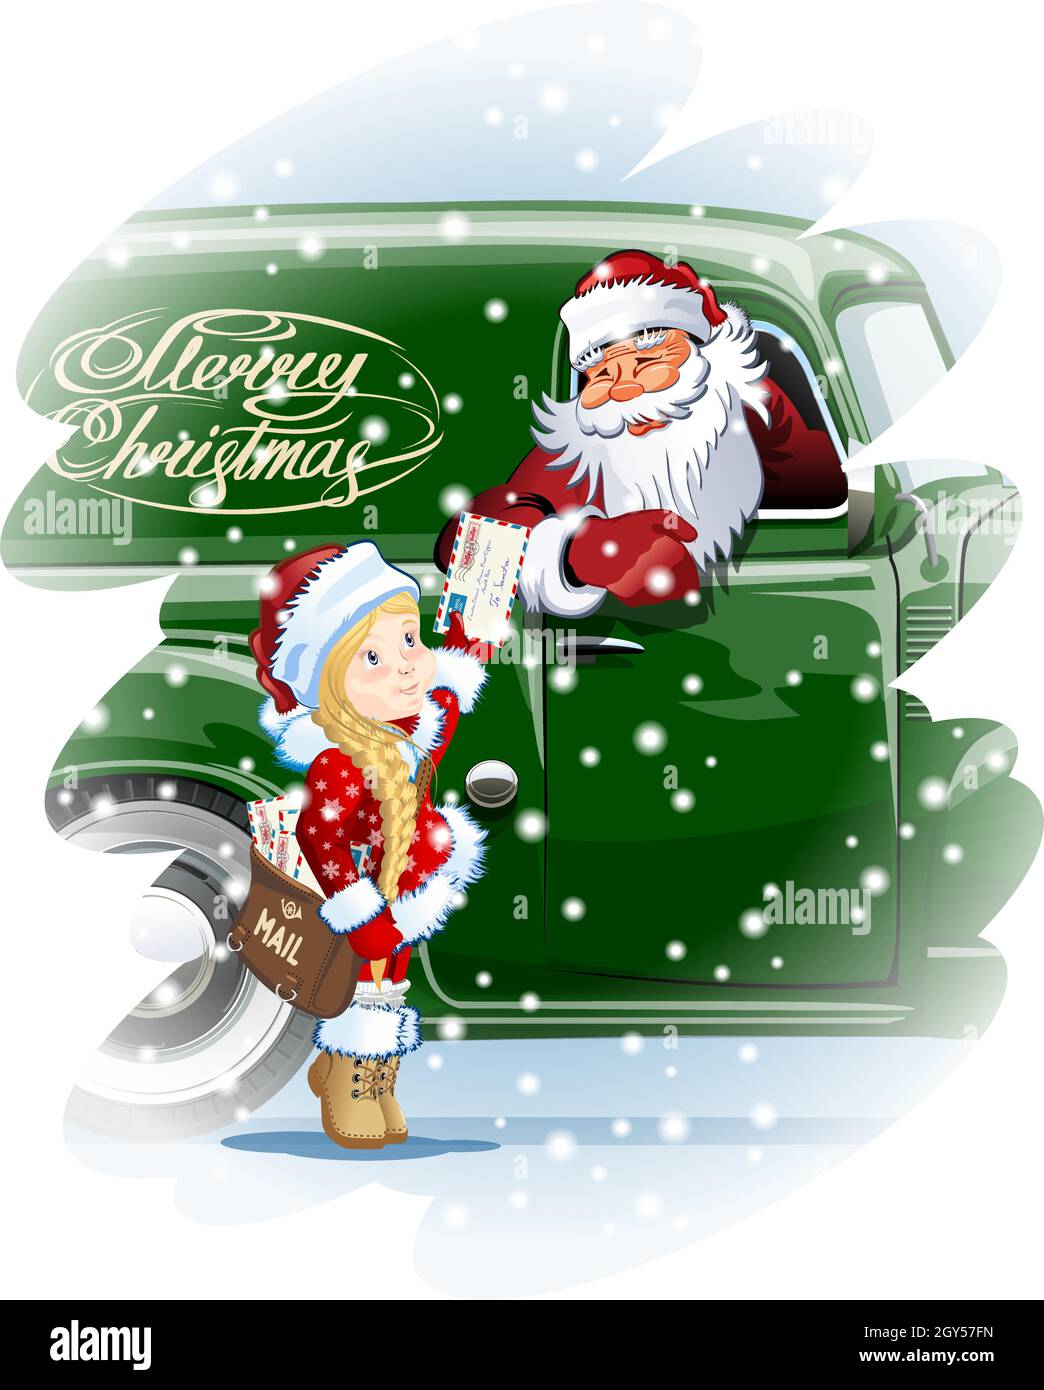 Vector Gruß Weihnachtskarte mit Snow Maiden - Postmann liefert Post für Santa. Verfügbares eps-10-Format, das durch Gruppen und Ebenen getrennt ist, zum Bearbeiten Stock Vektor